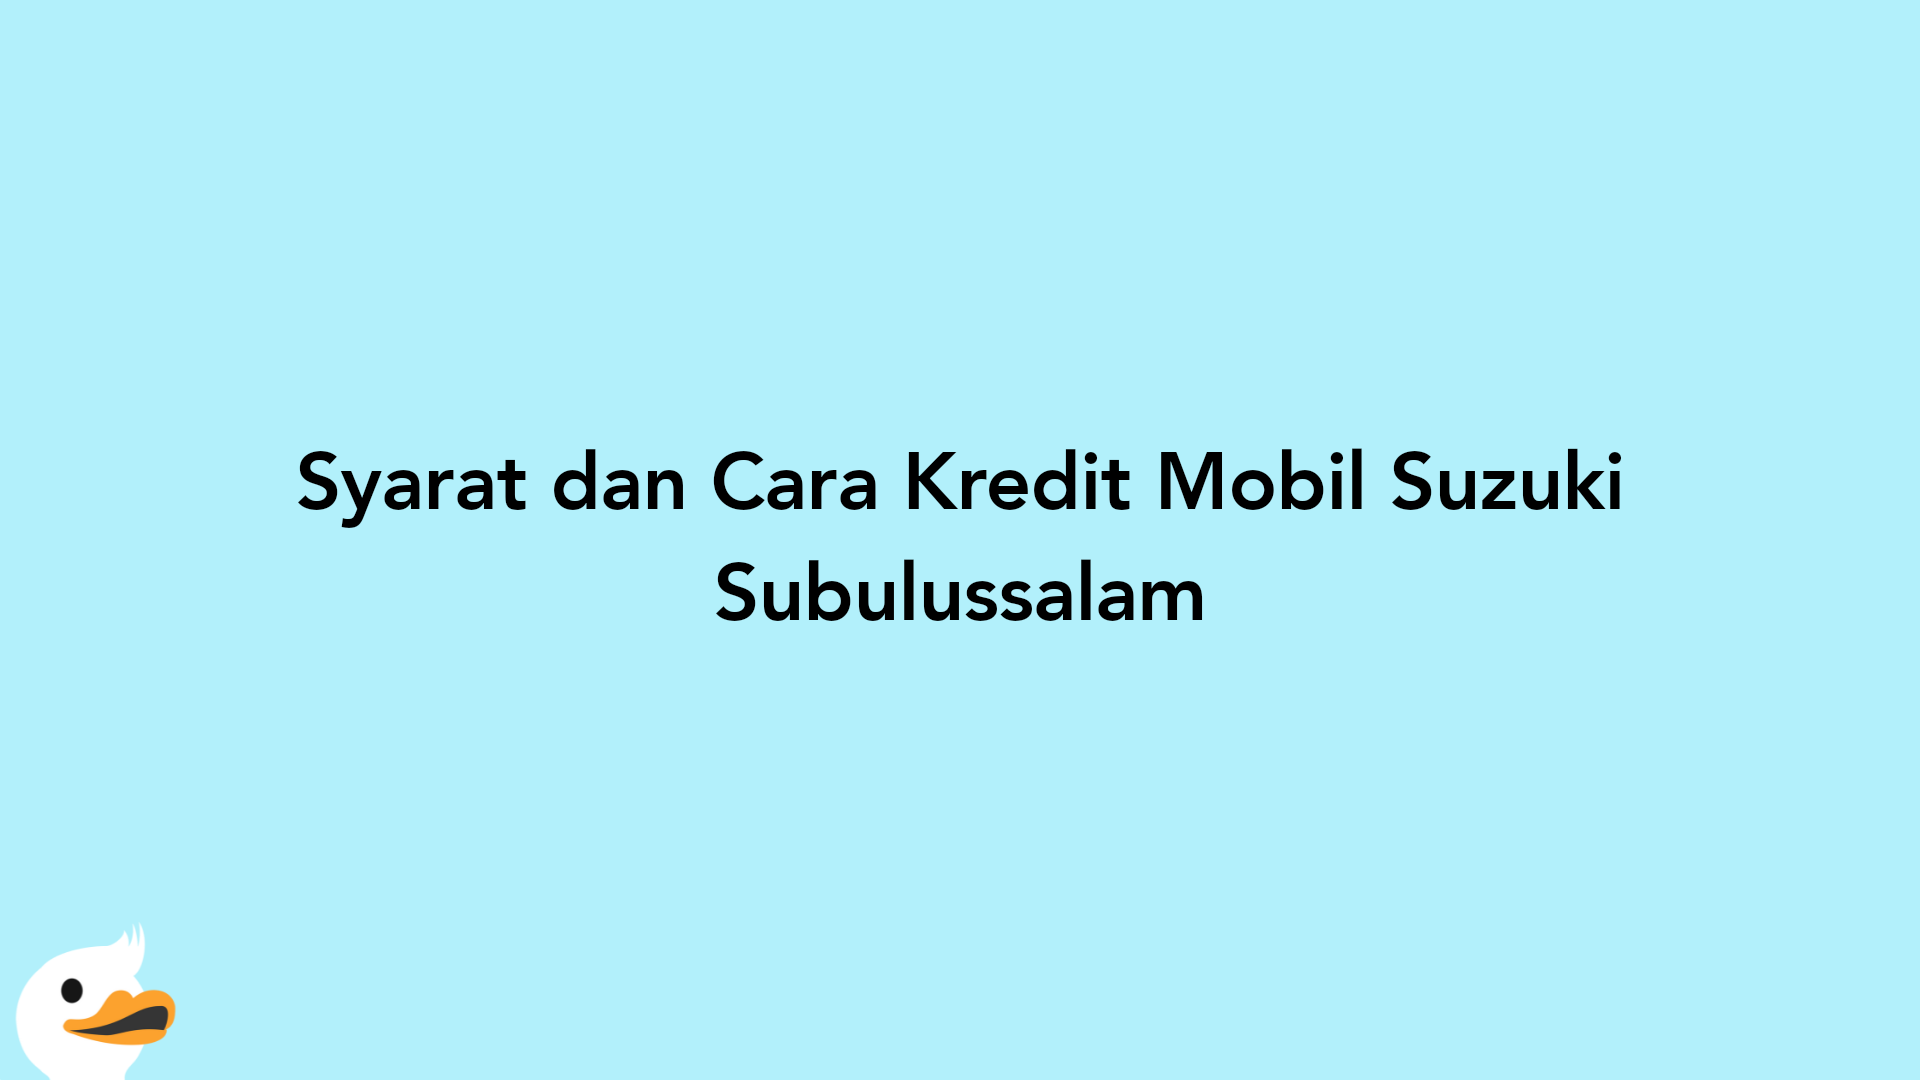 Syarat dan Cara Kredit Mobil Suzuki Subulussalam